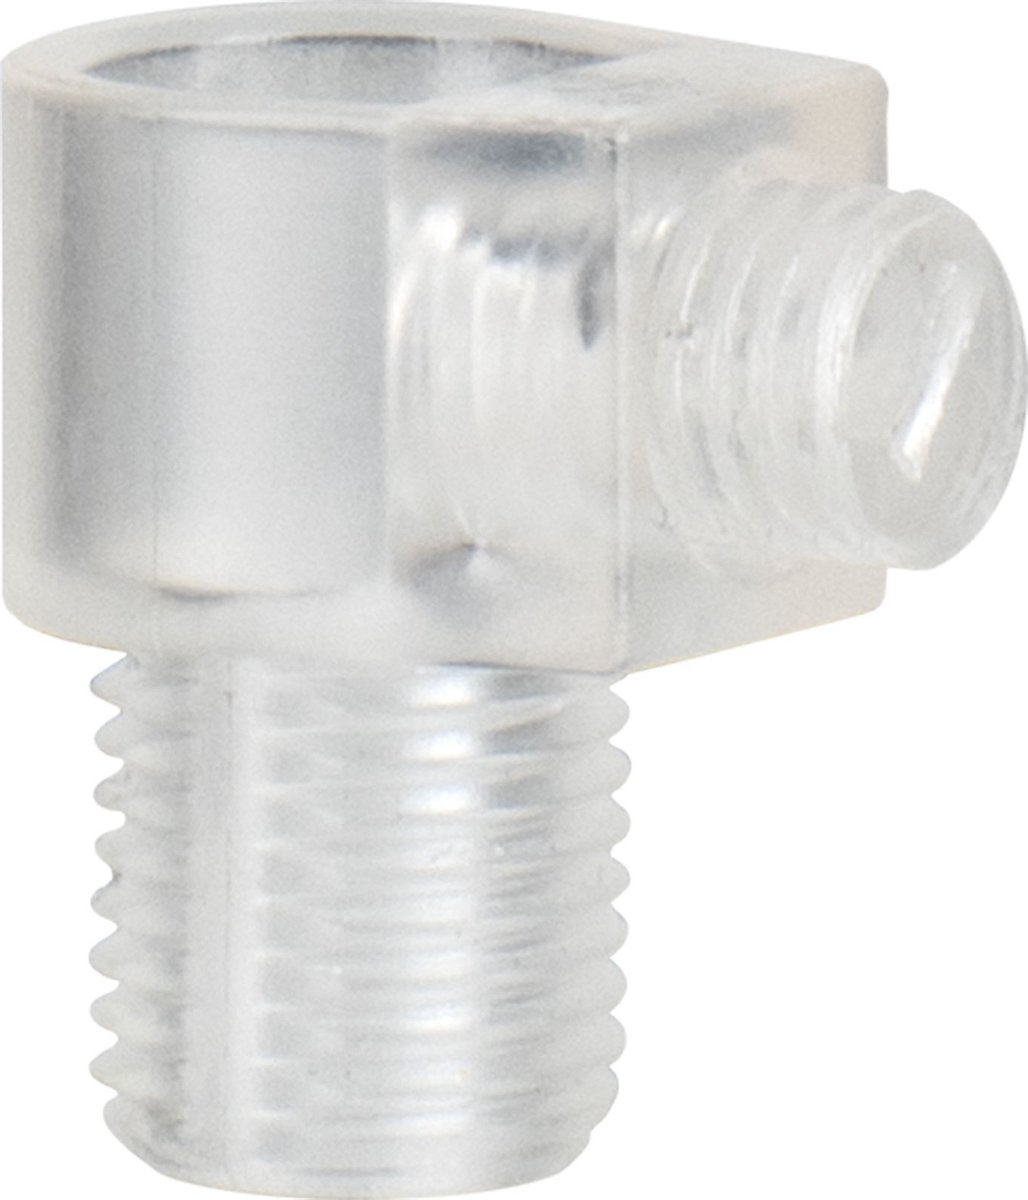 Bailey | 10pcs Cord Grip Transparent M10 Male | M10 Cord grip